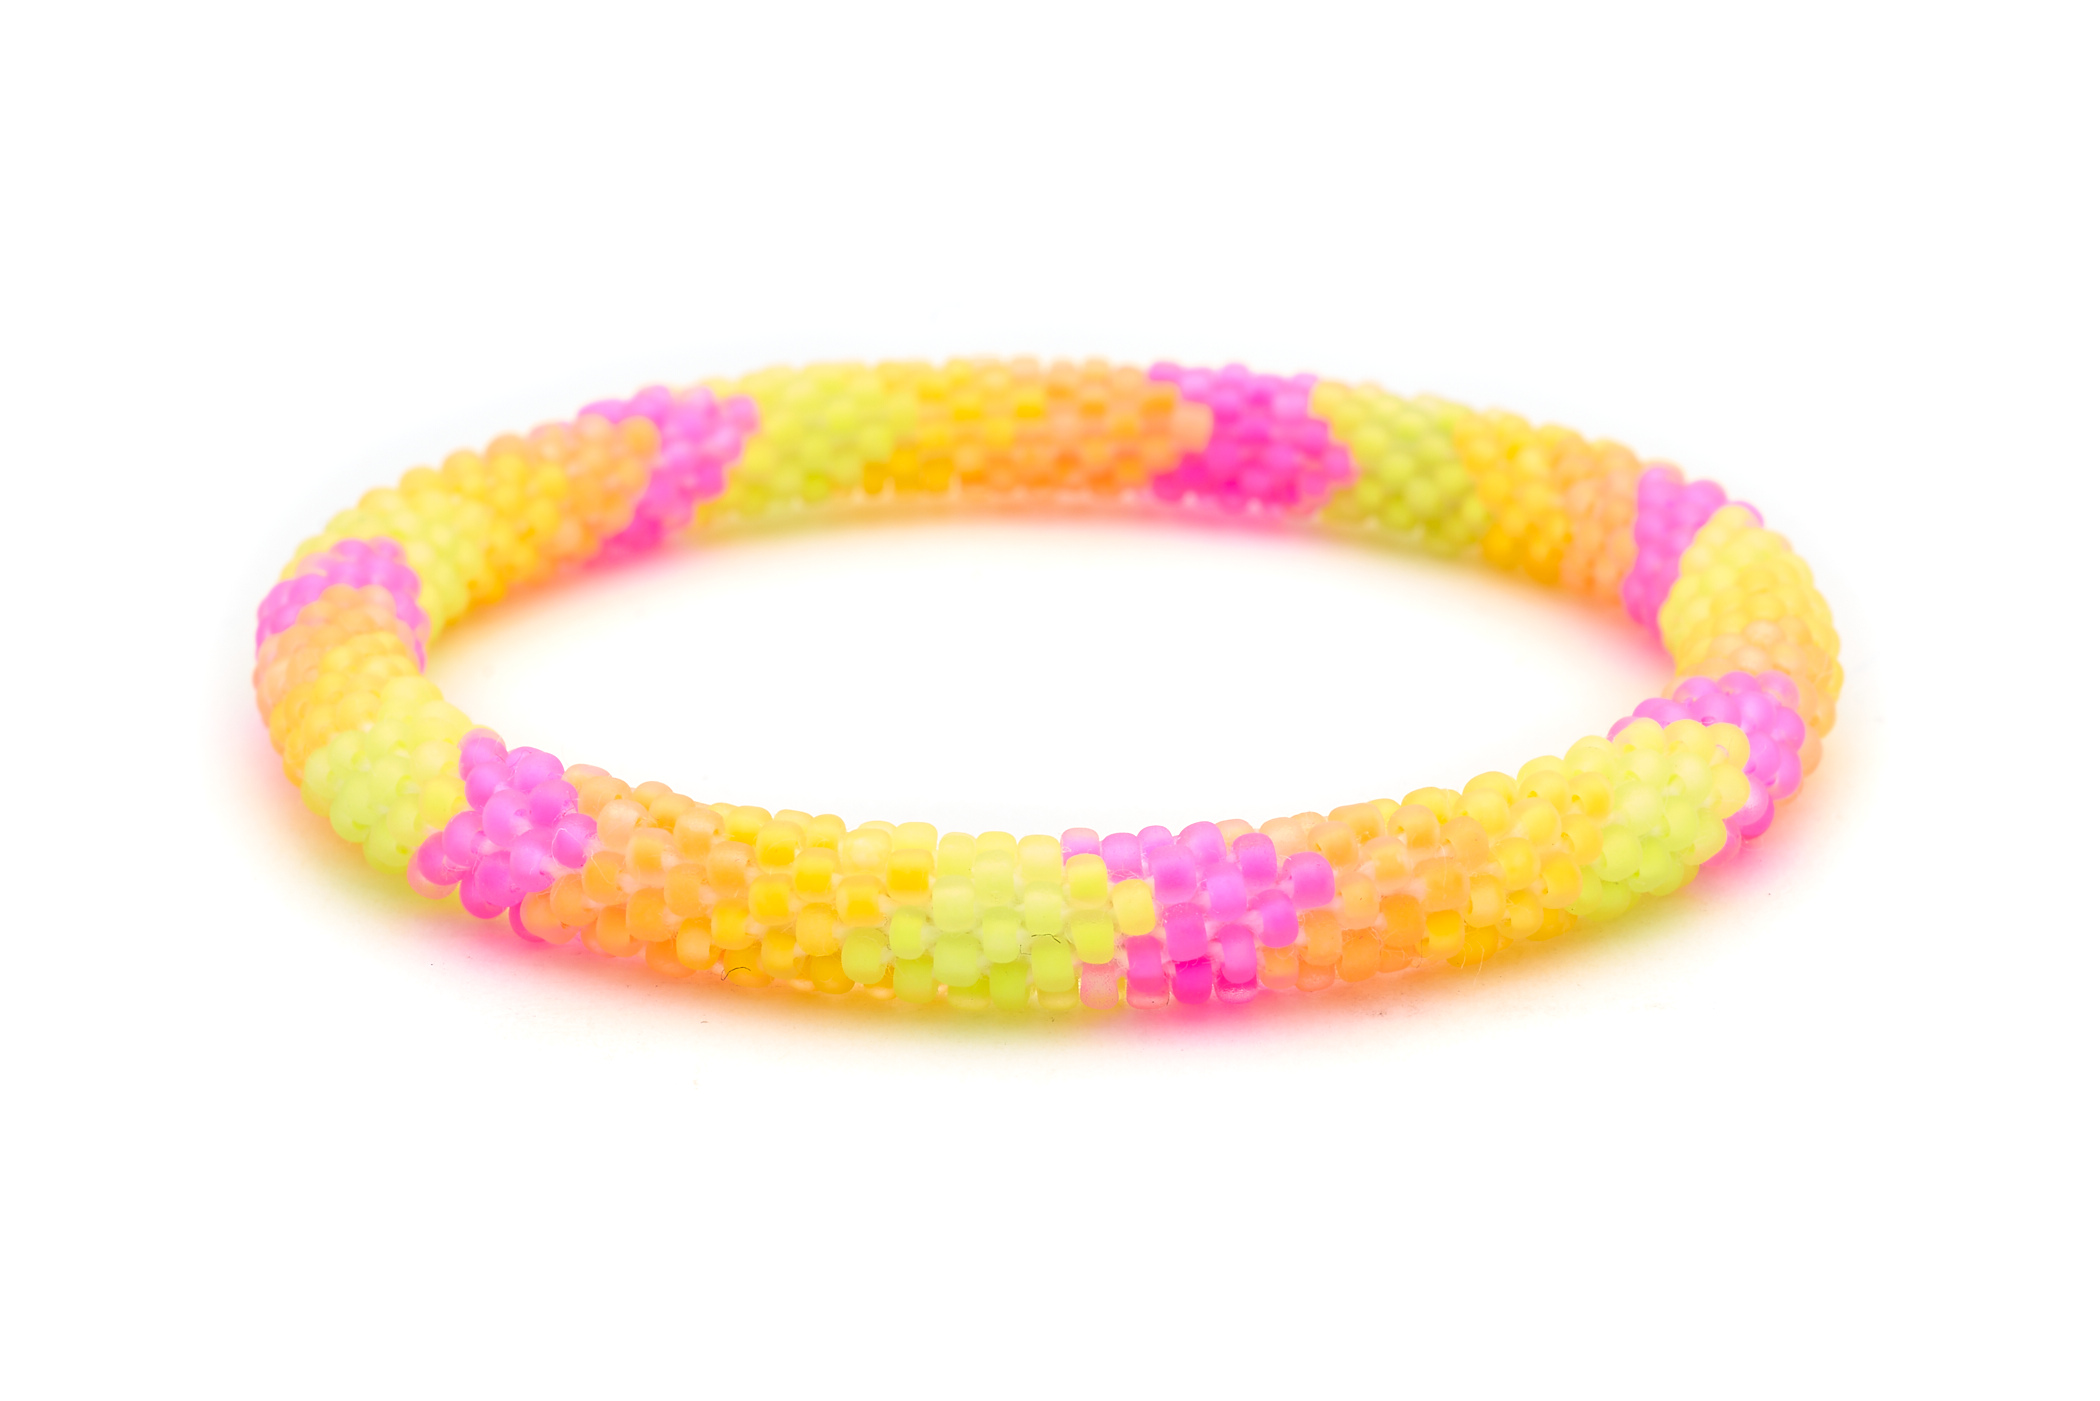 Sashka Co. Extended 8" Bracelet Neon Pink / Neon yellow / Neon Orange Neon Sunrise Bracelet - Extended 8"